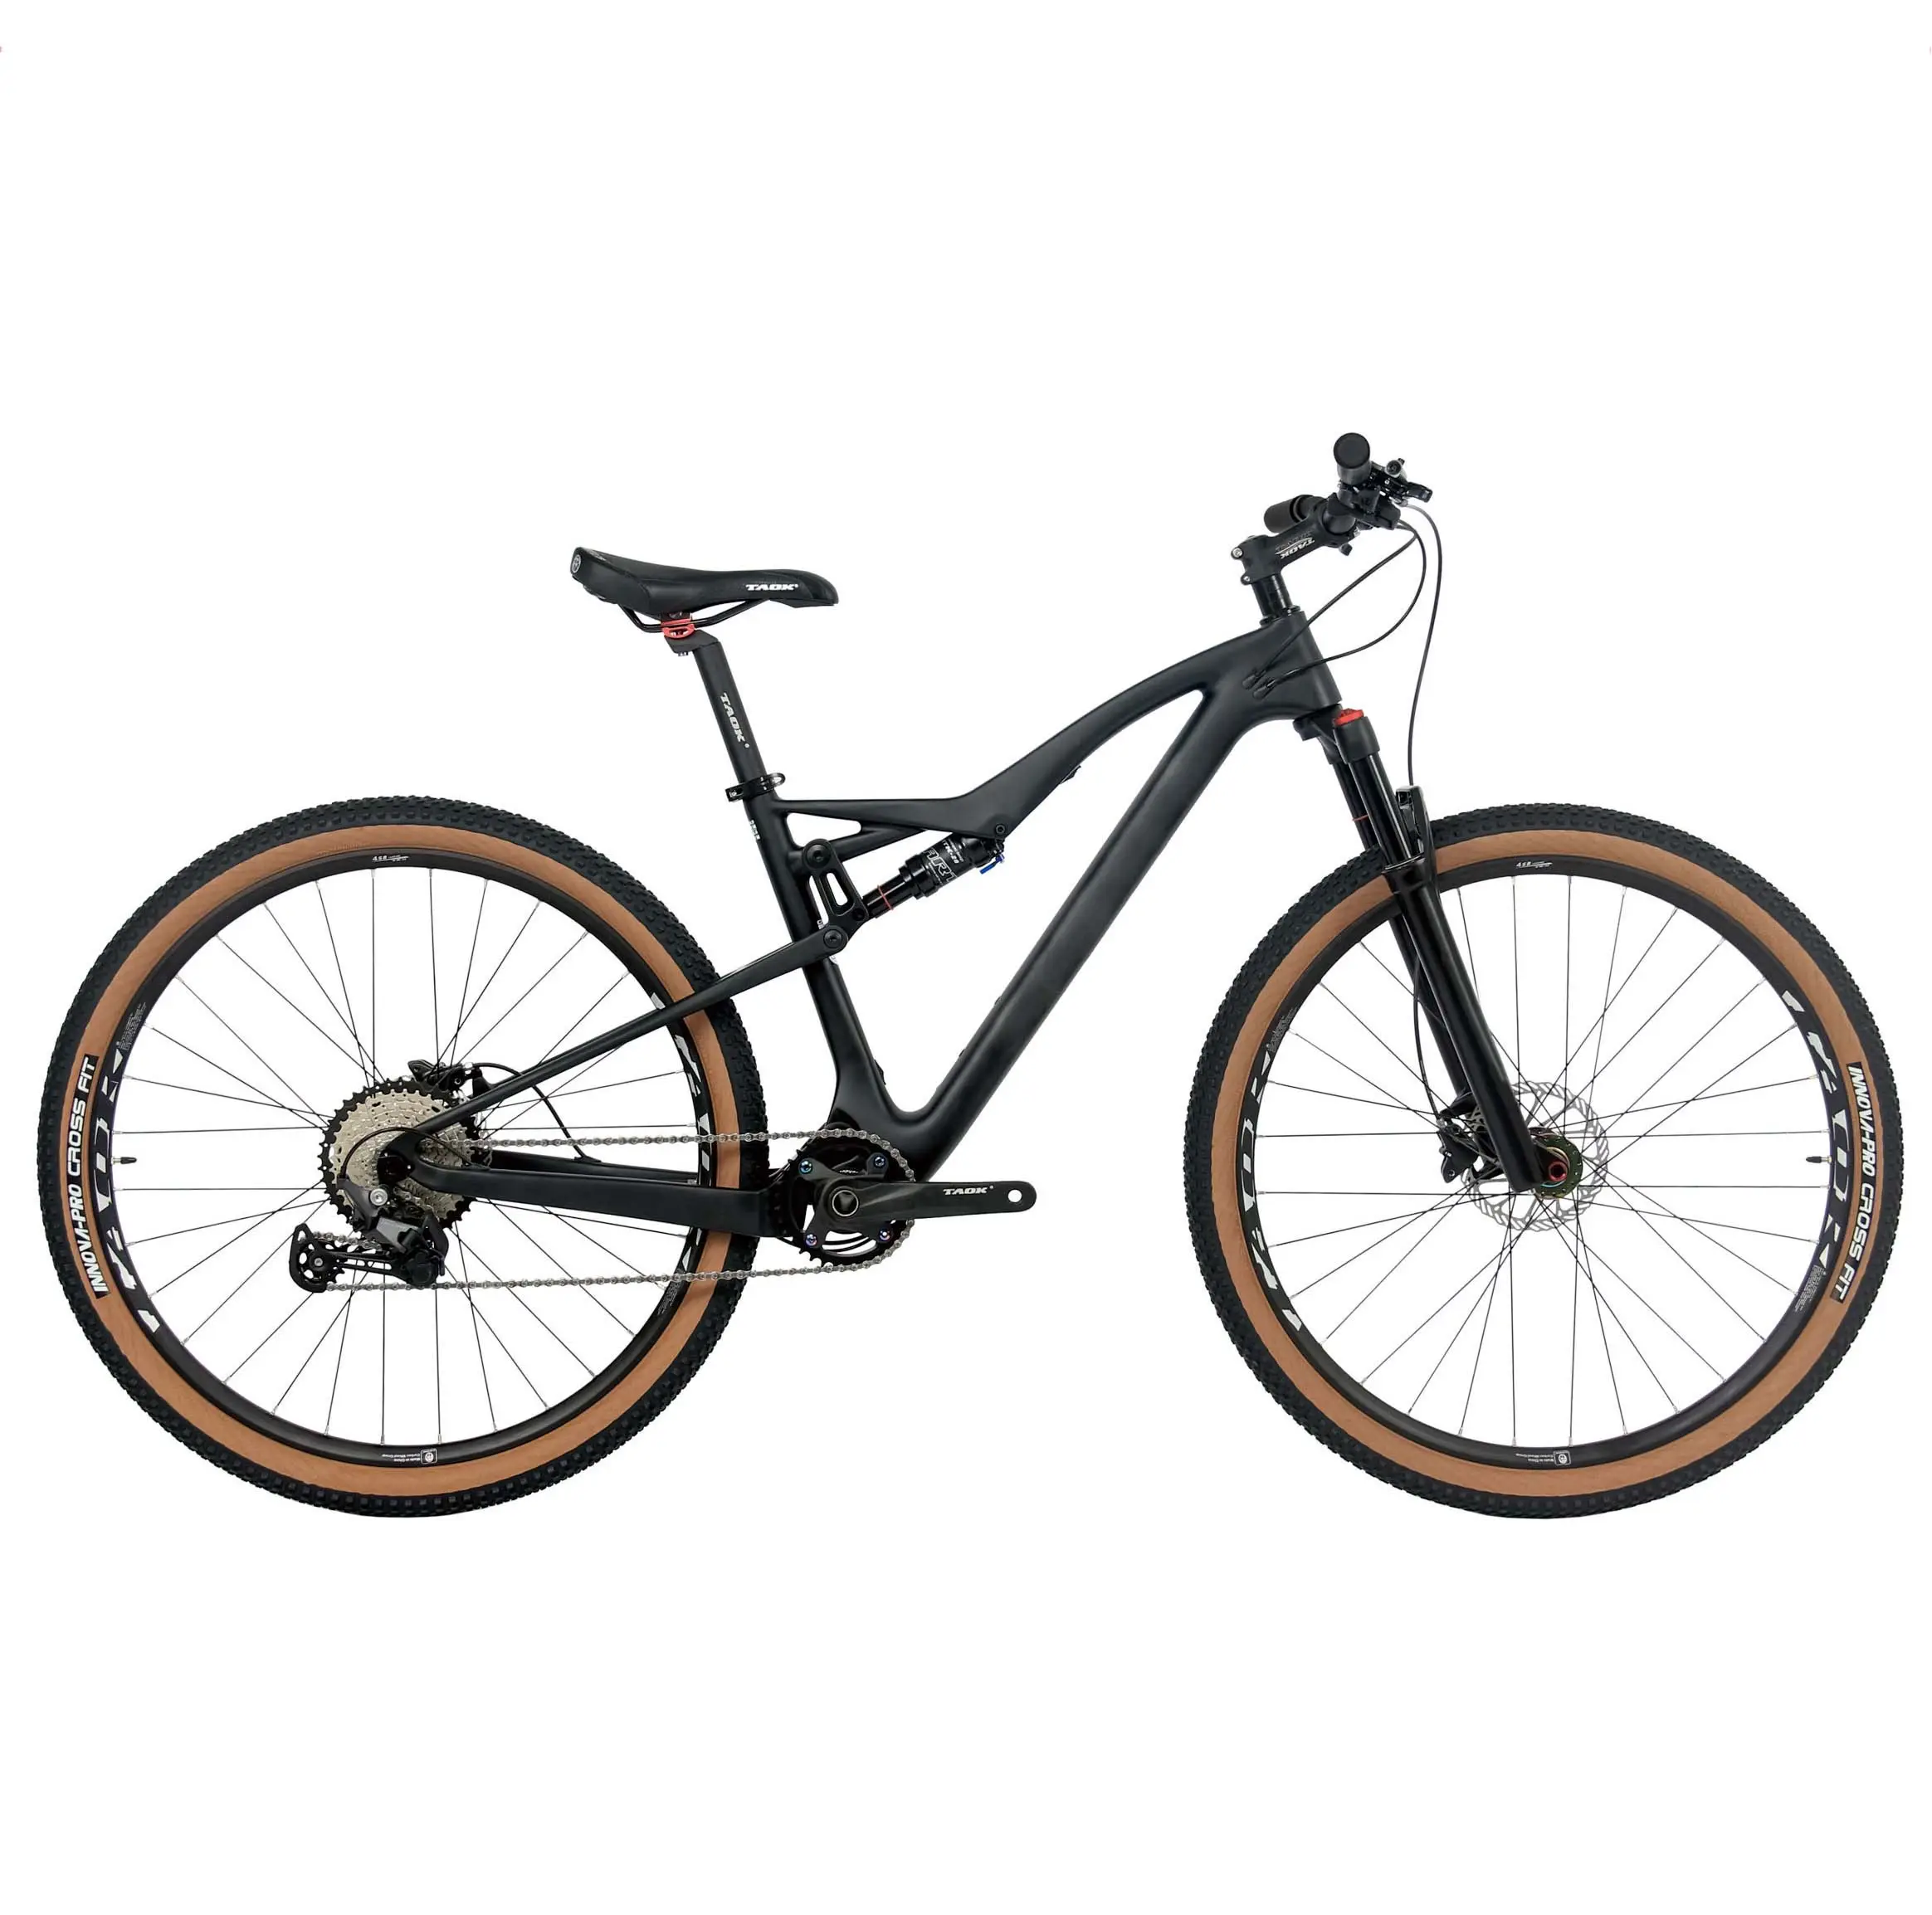 29er boost Shimano BR-MT200 11S 13.5kg komple tam süspansiyon bisiklet bisiklet toptan mtb bisiklet karbon çerçeve